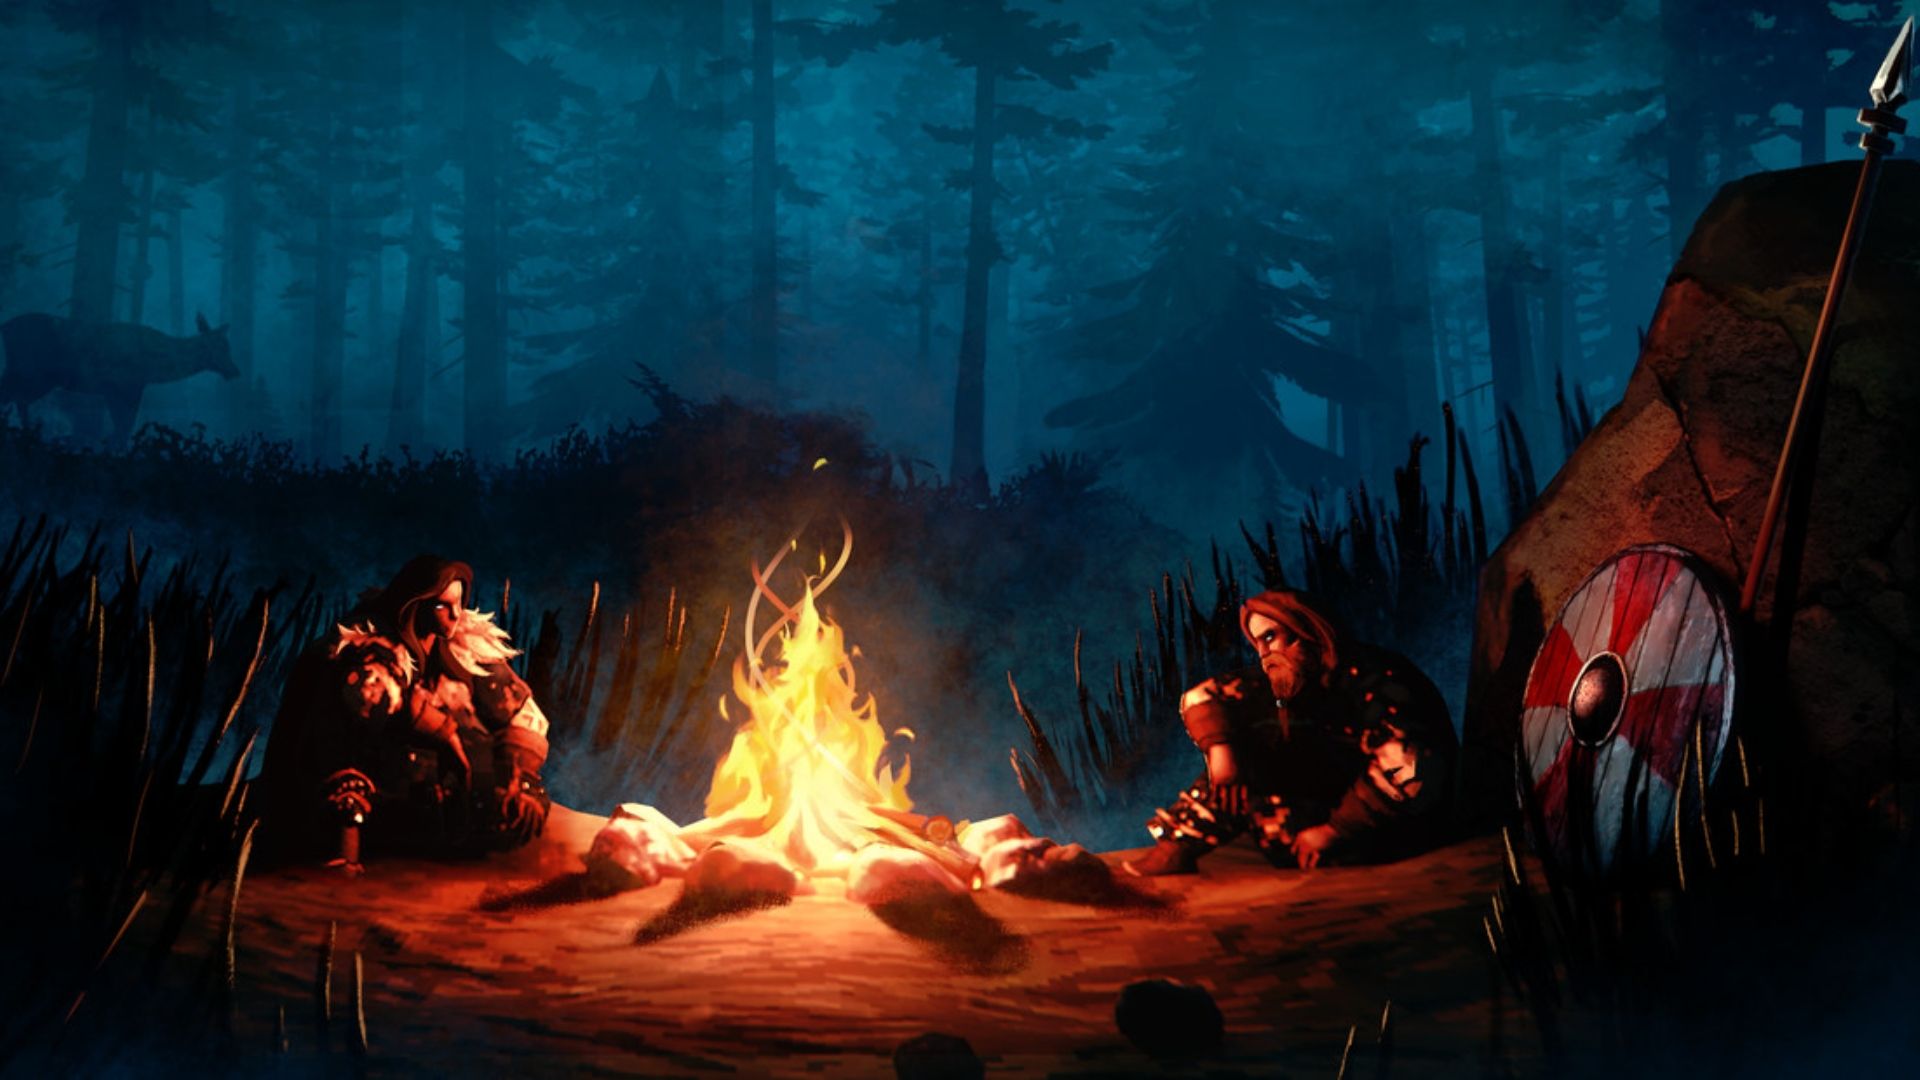 ベスト サバイバル ゲーム: 2 人のハンターが火の周りに座っています。